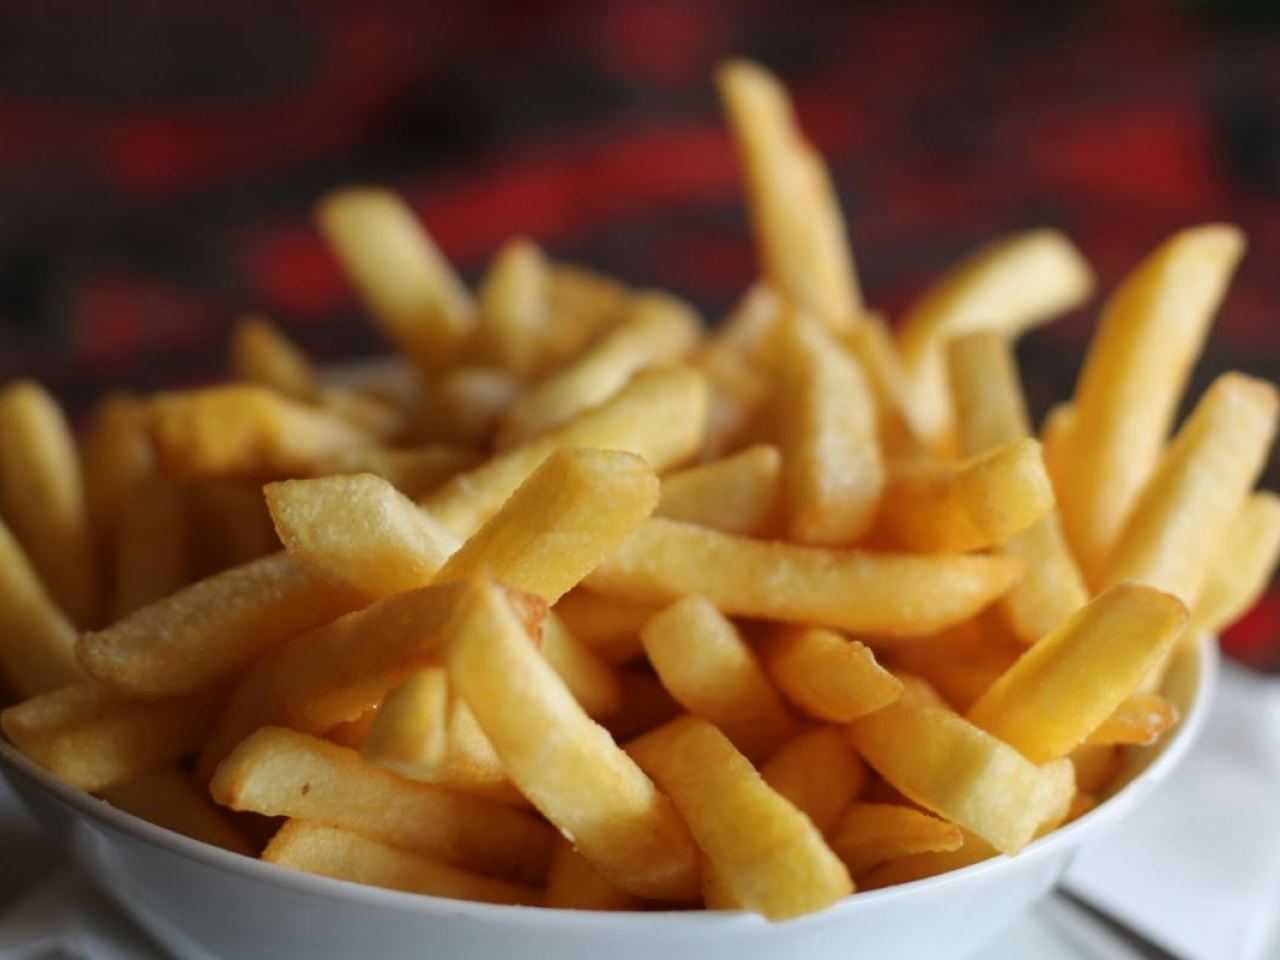 Godetevi l'alternativa sana e perfetta alle patatine fritte: scoprite qui la ricetta